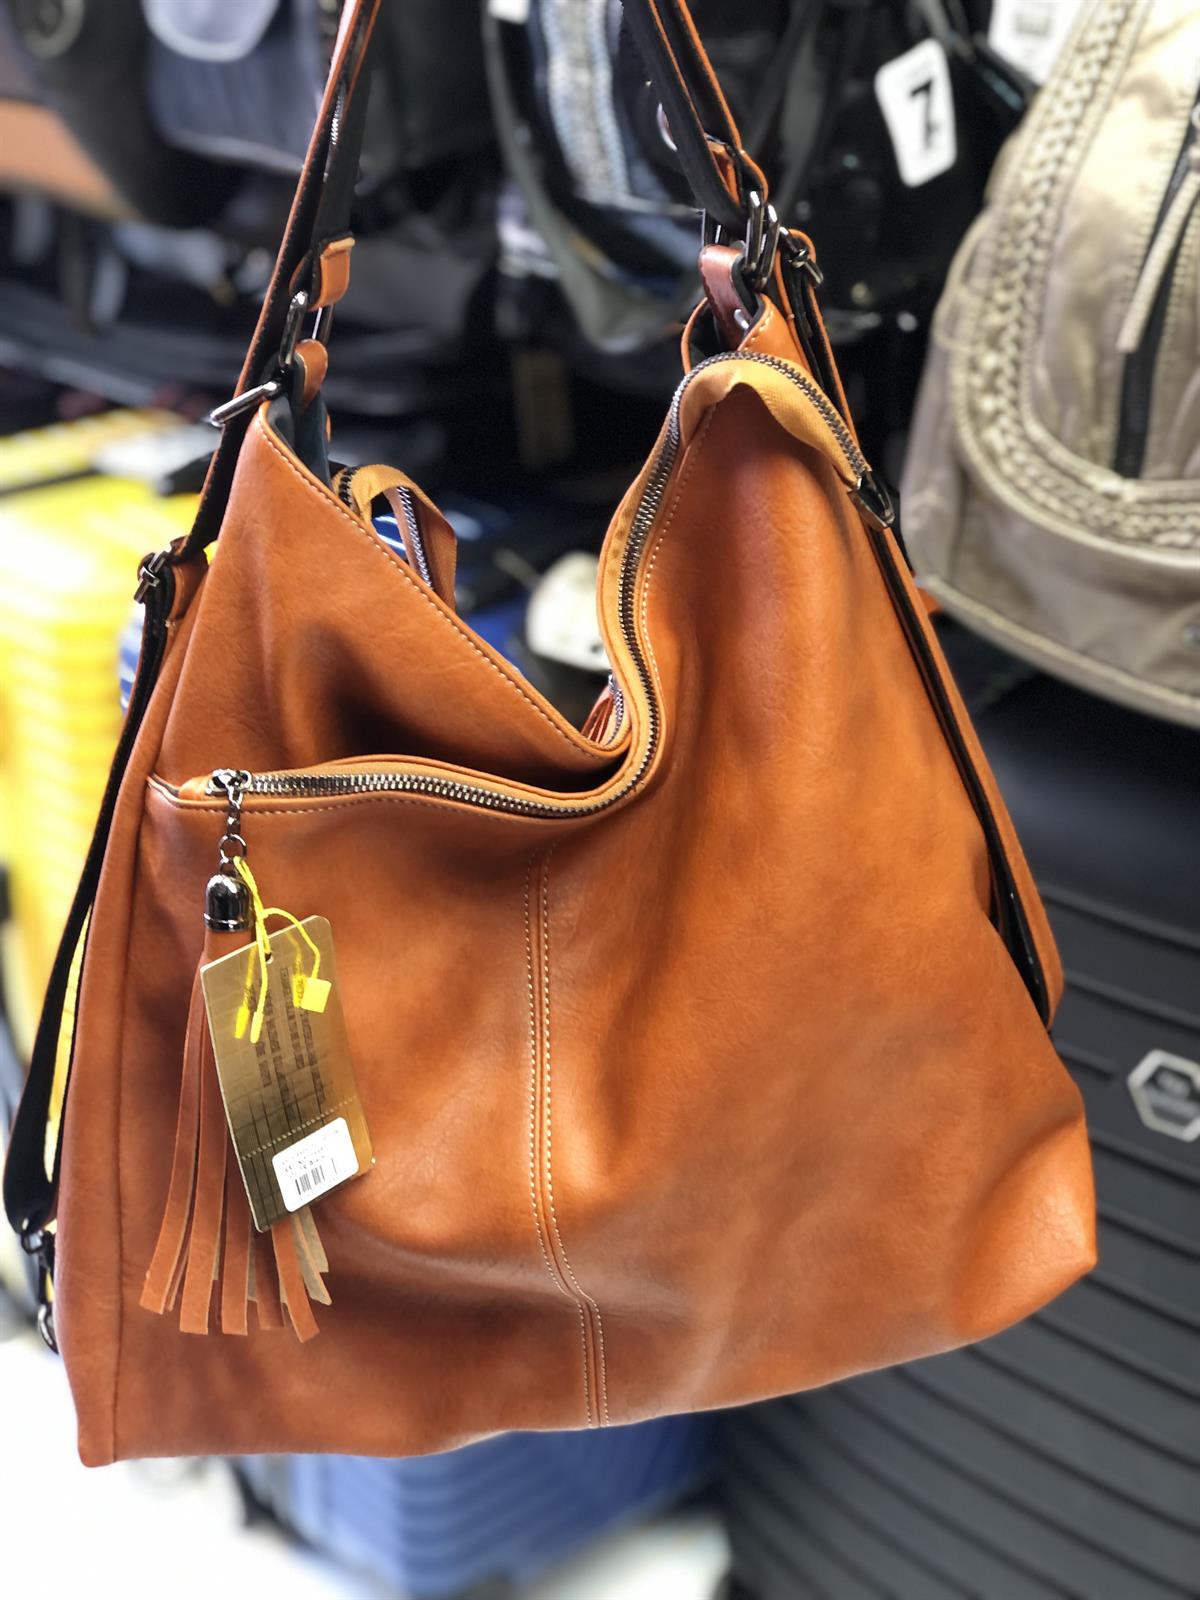 ElizaBell Kadın sırt ve kol çantası modeli yumuşak deri ebat 40 cm 35  |elizabell.com.tr